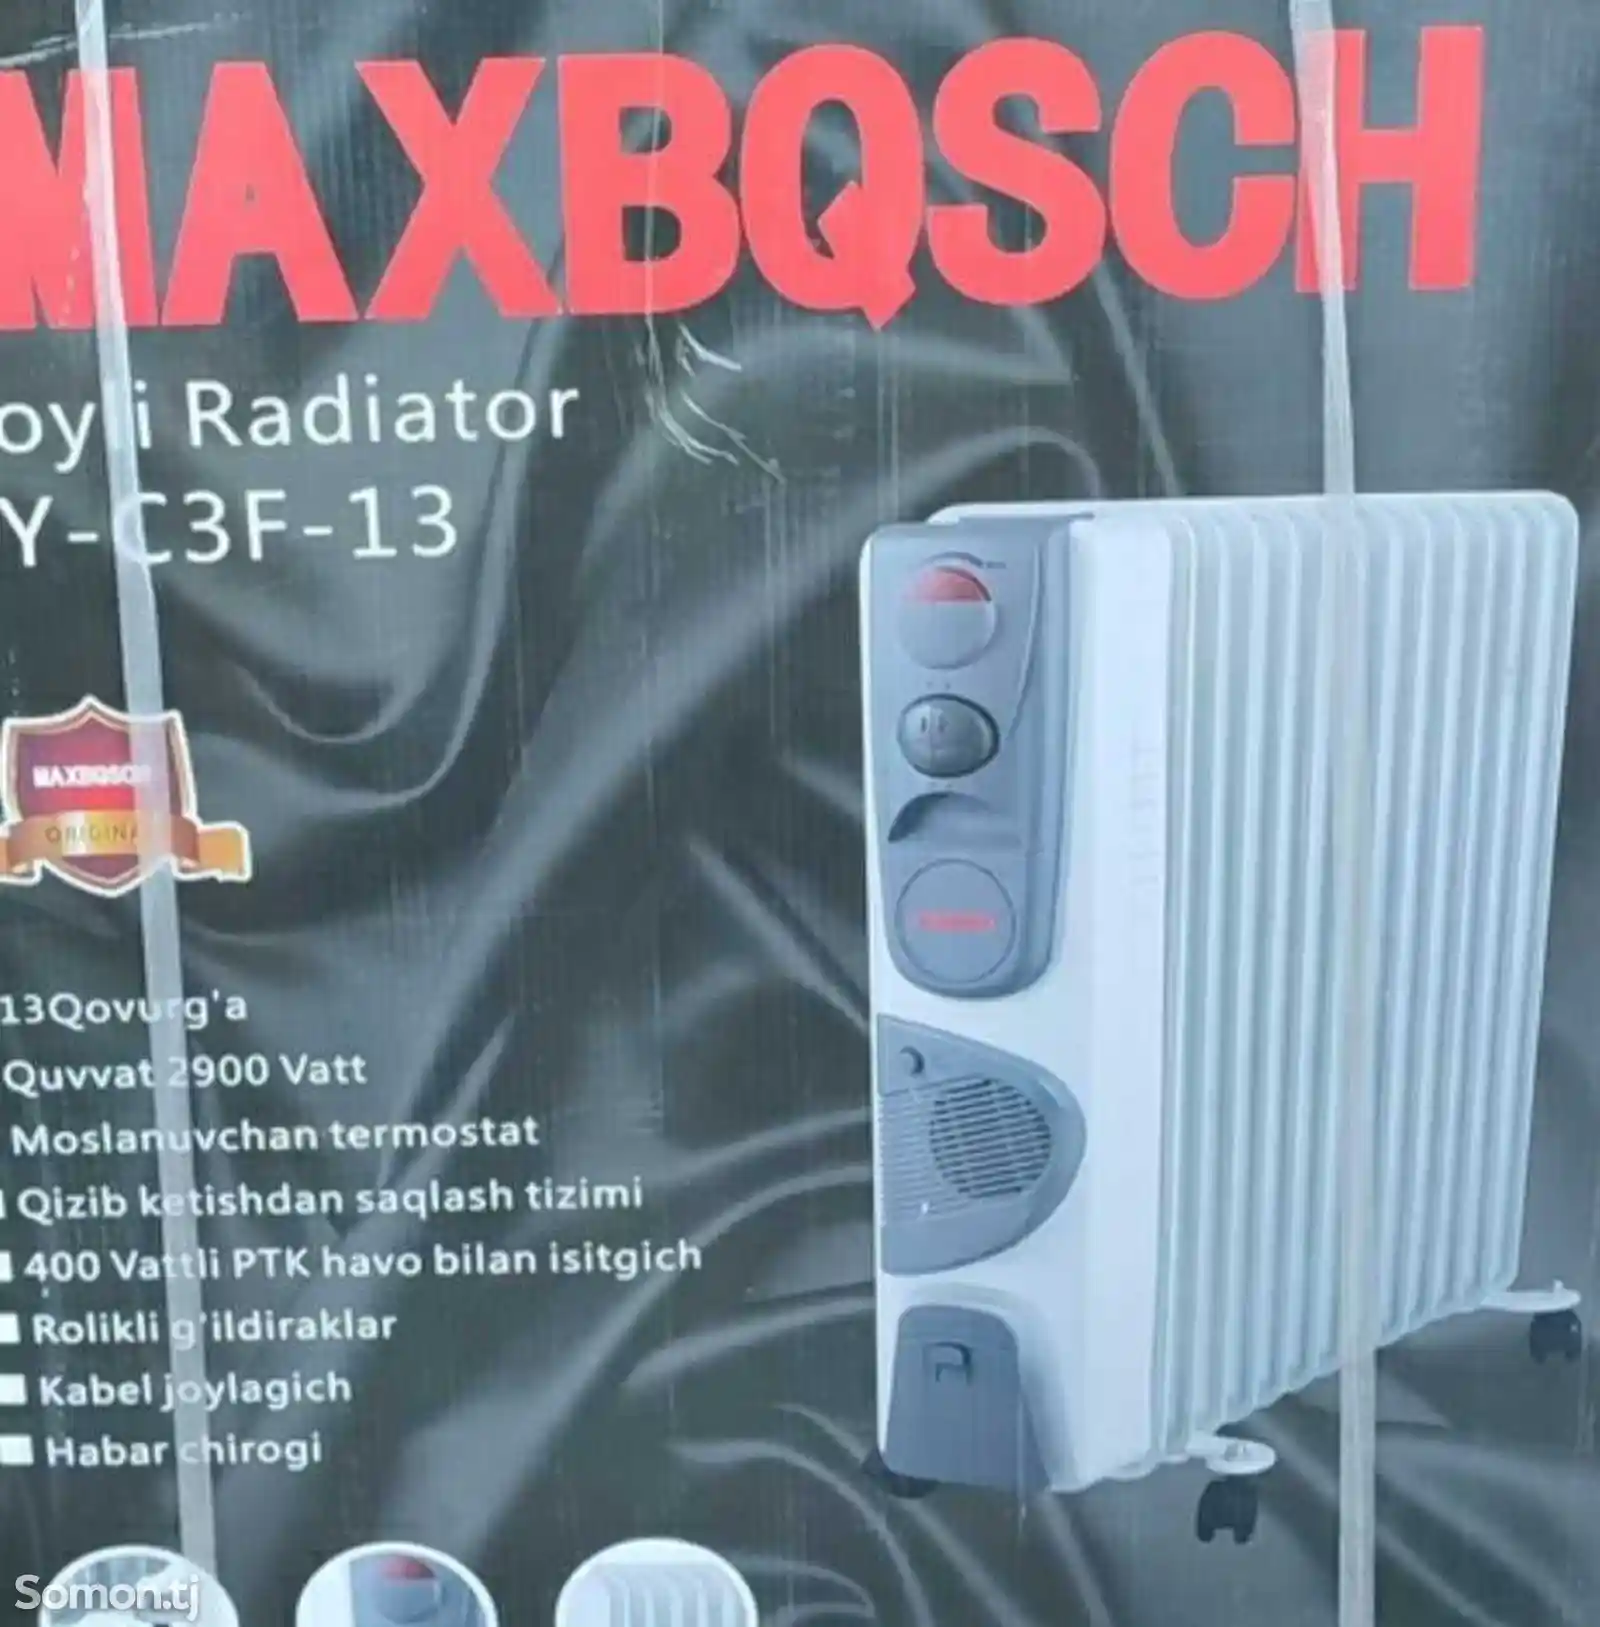 Масляный радиатор Maxbosch Hy-c3f-13